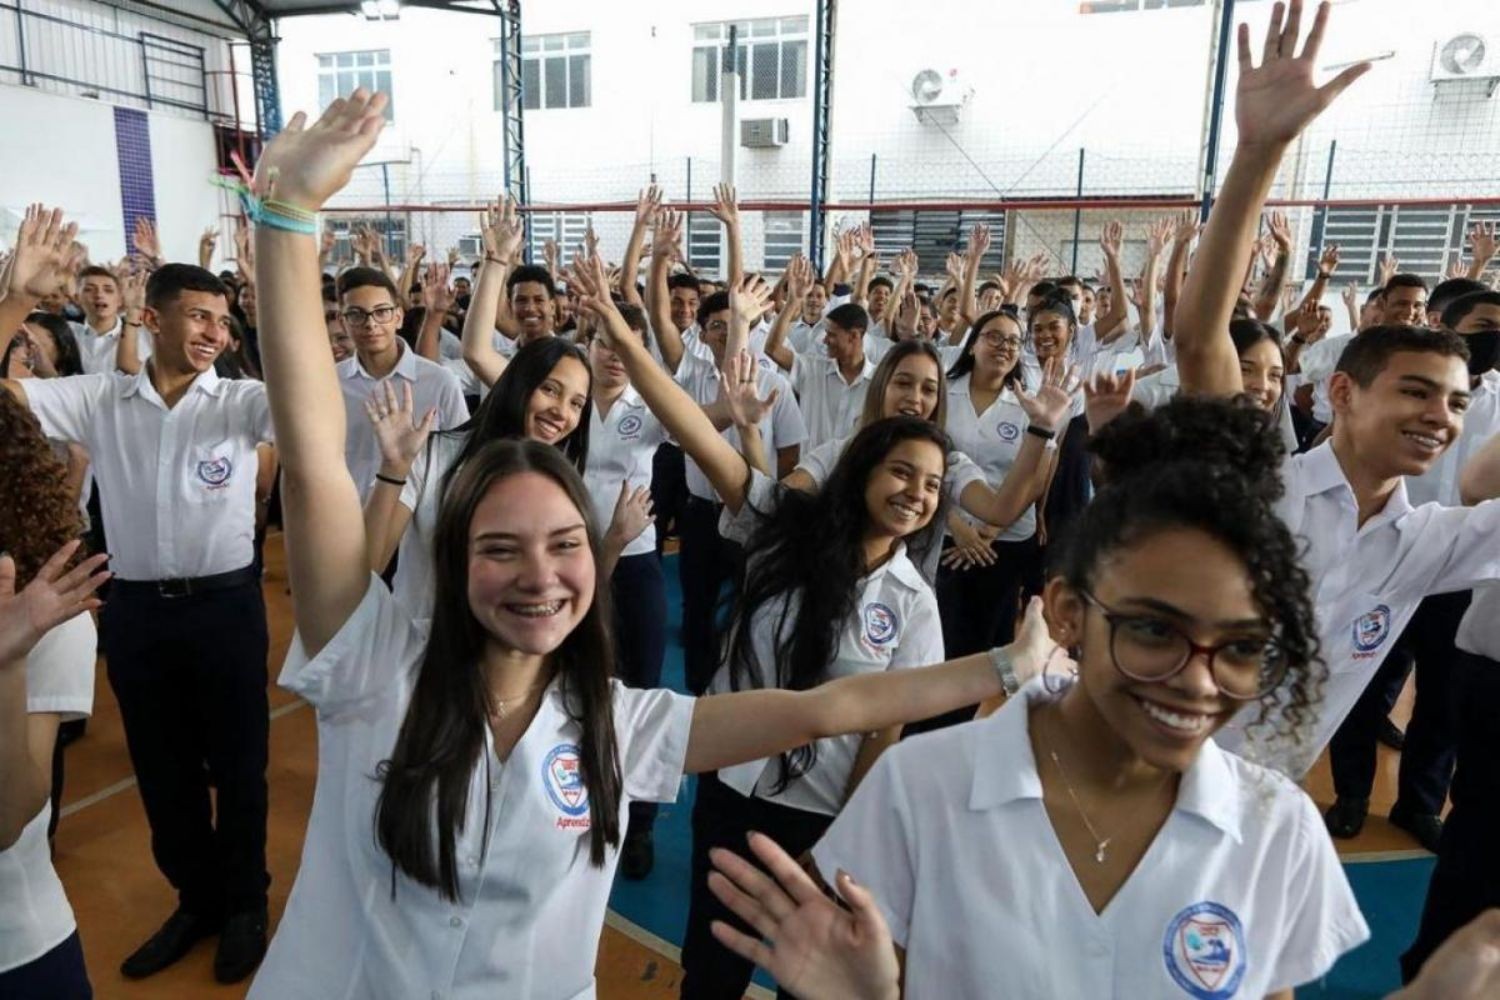 Centro de aprendizagem profissional de Santos abre 700 vagas para curso preparatório; saiba como se inscrever